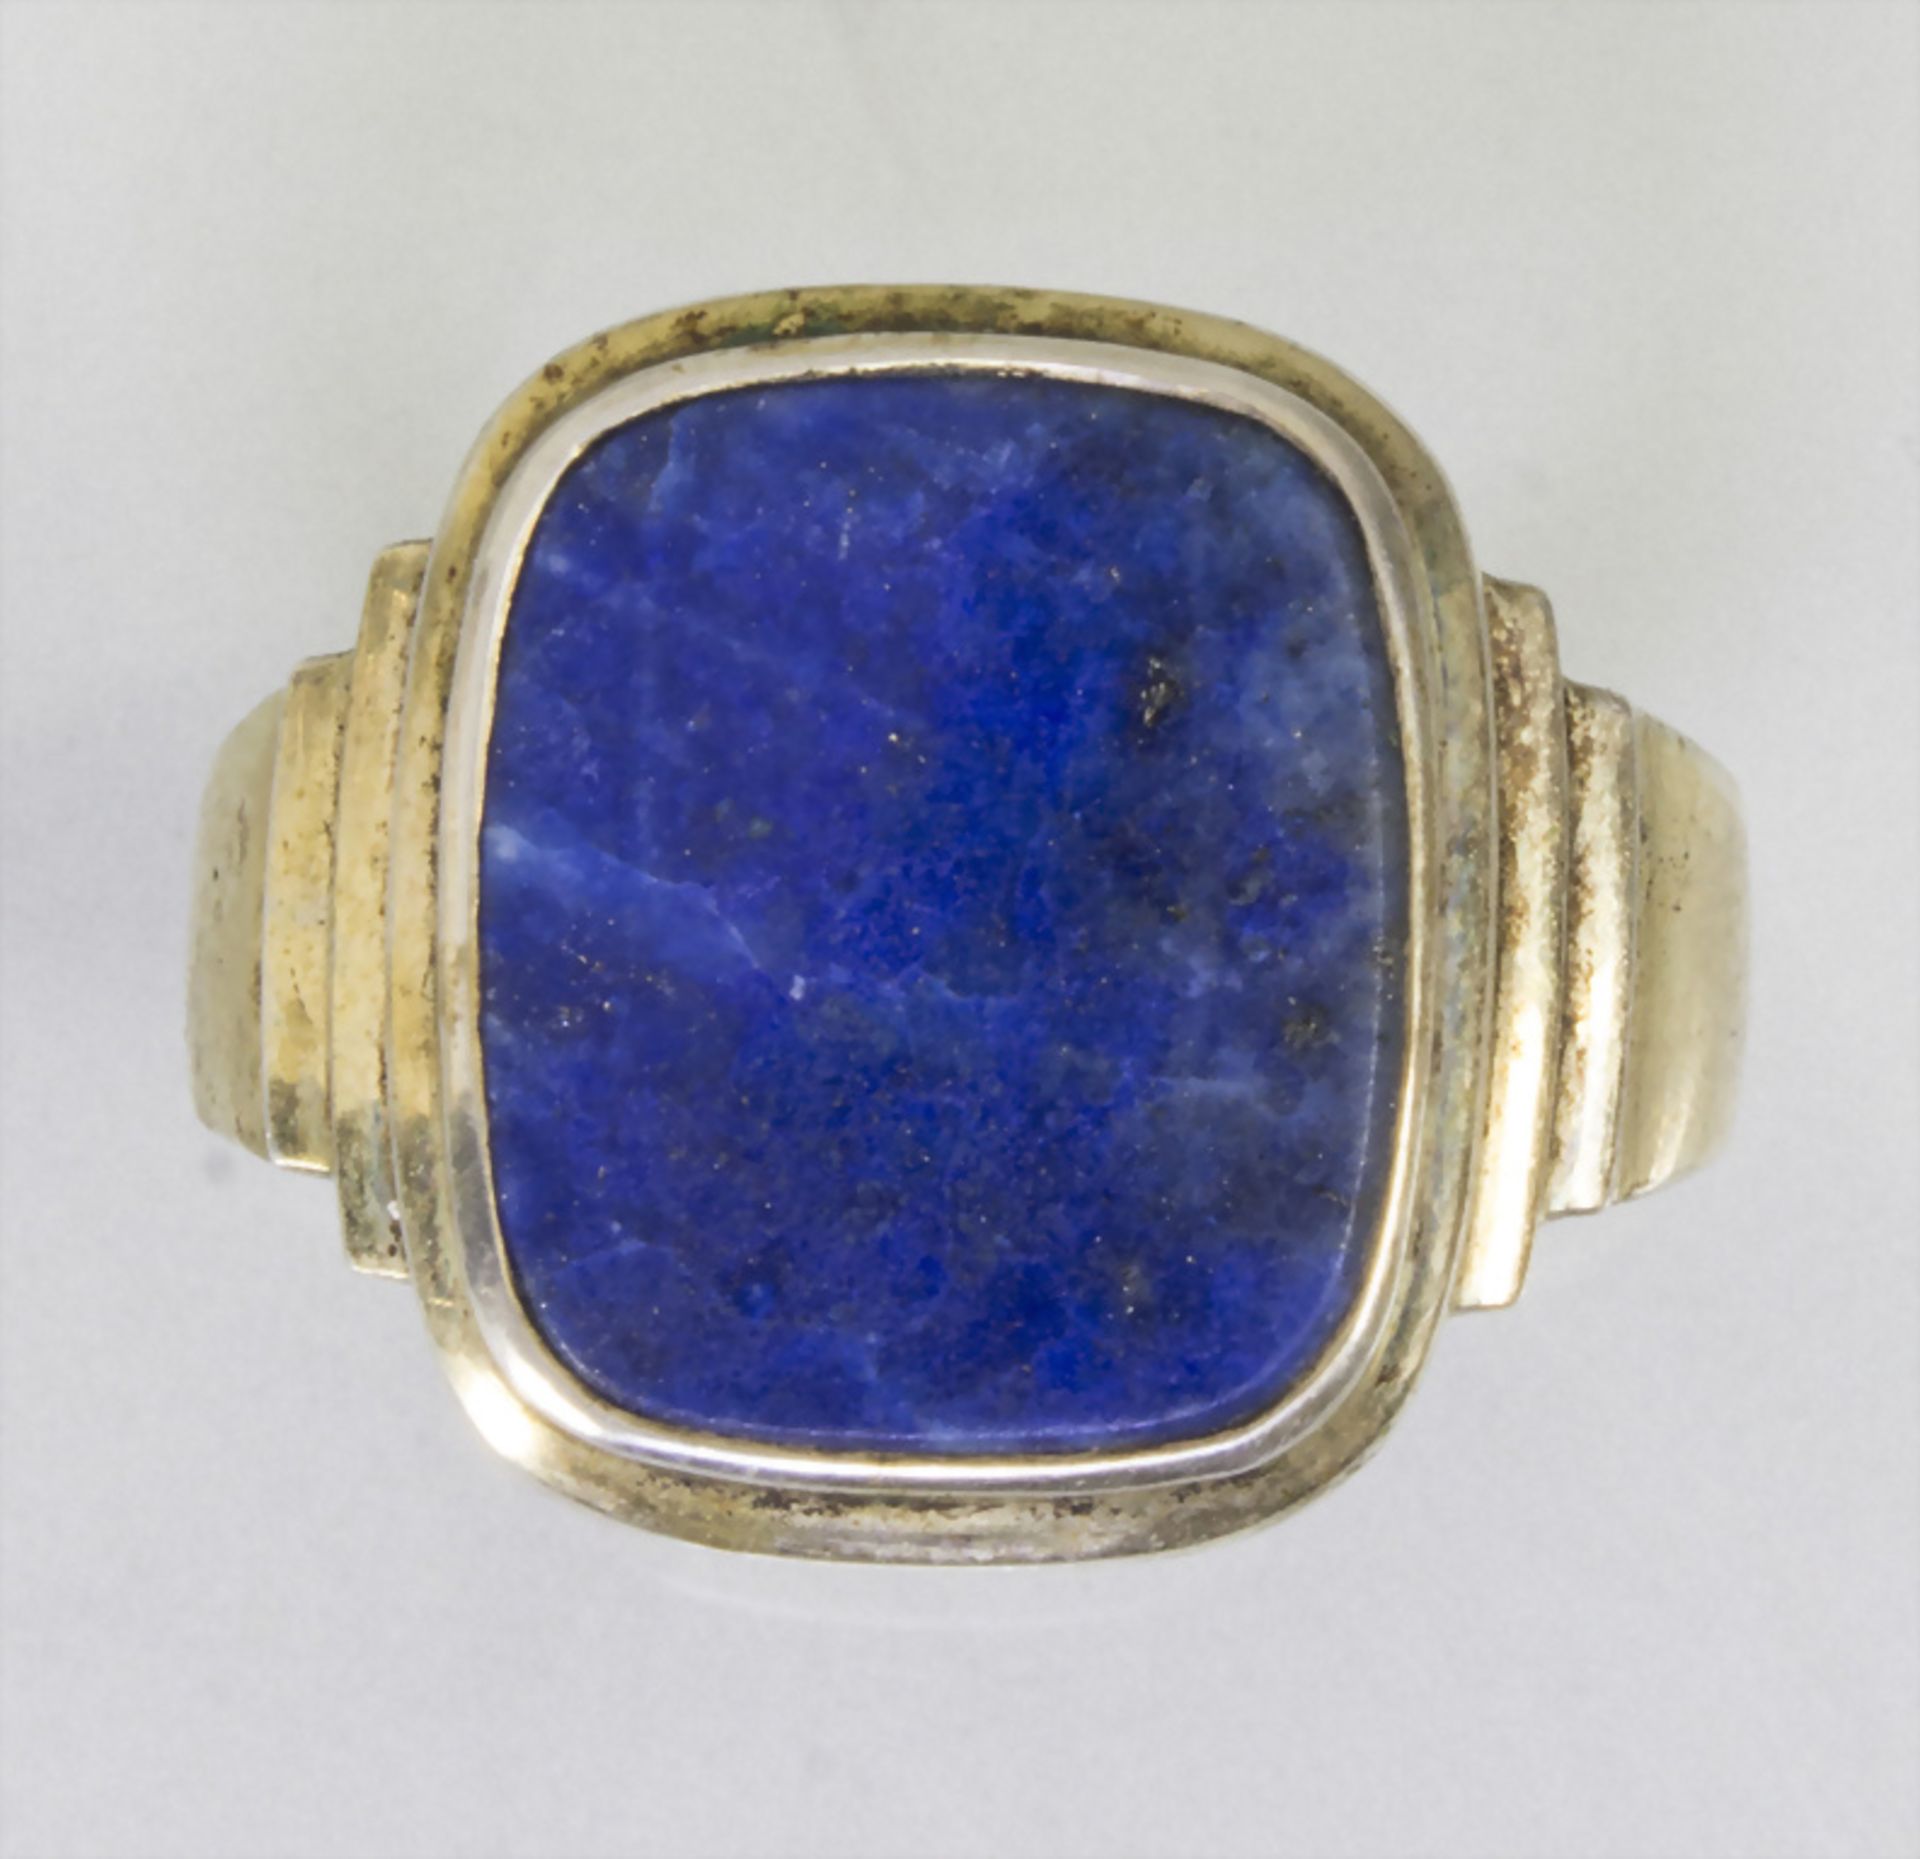 Herrenring mit Lapislazuli / A men's gold washed silver ring with lapis lazuli